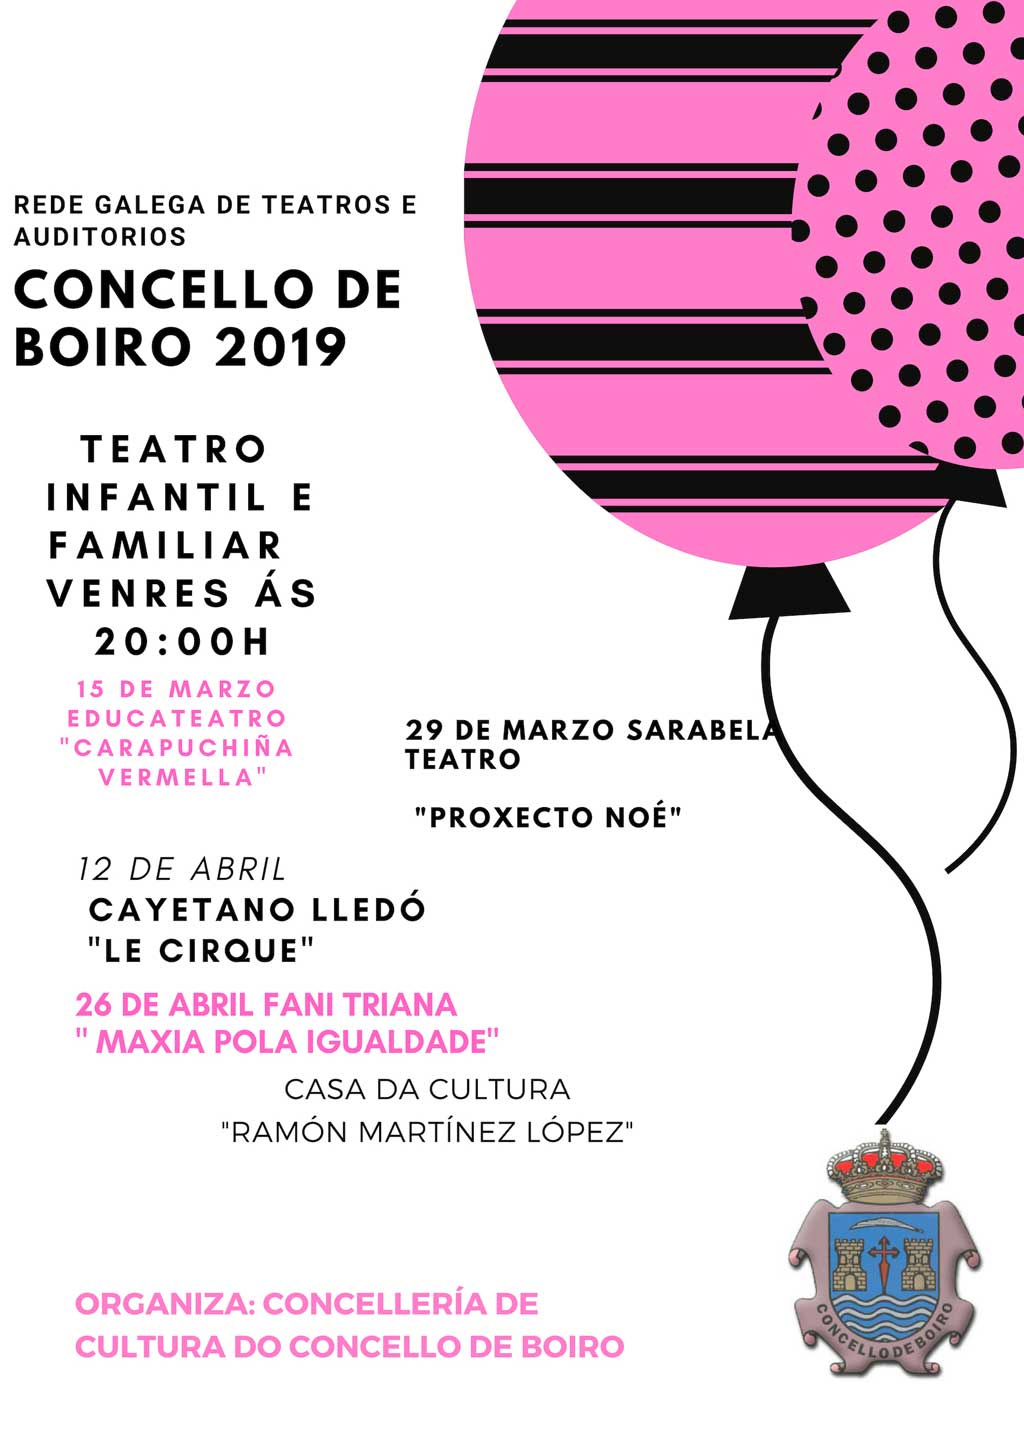 Rede galega de teatros e auditorios. Concello de Boiro 2019